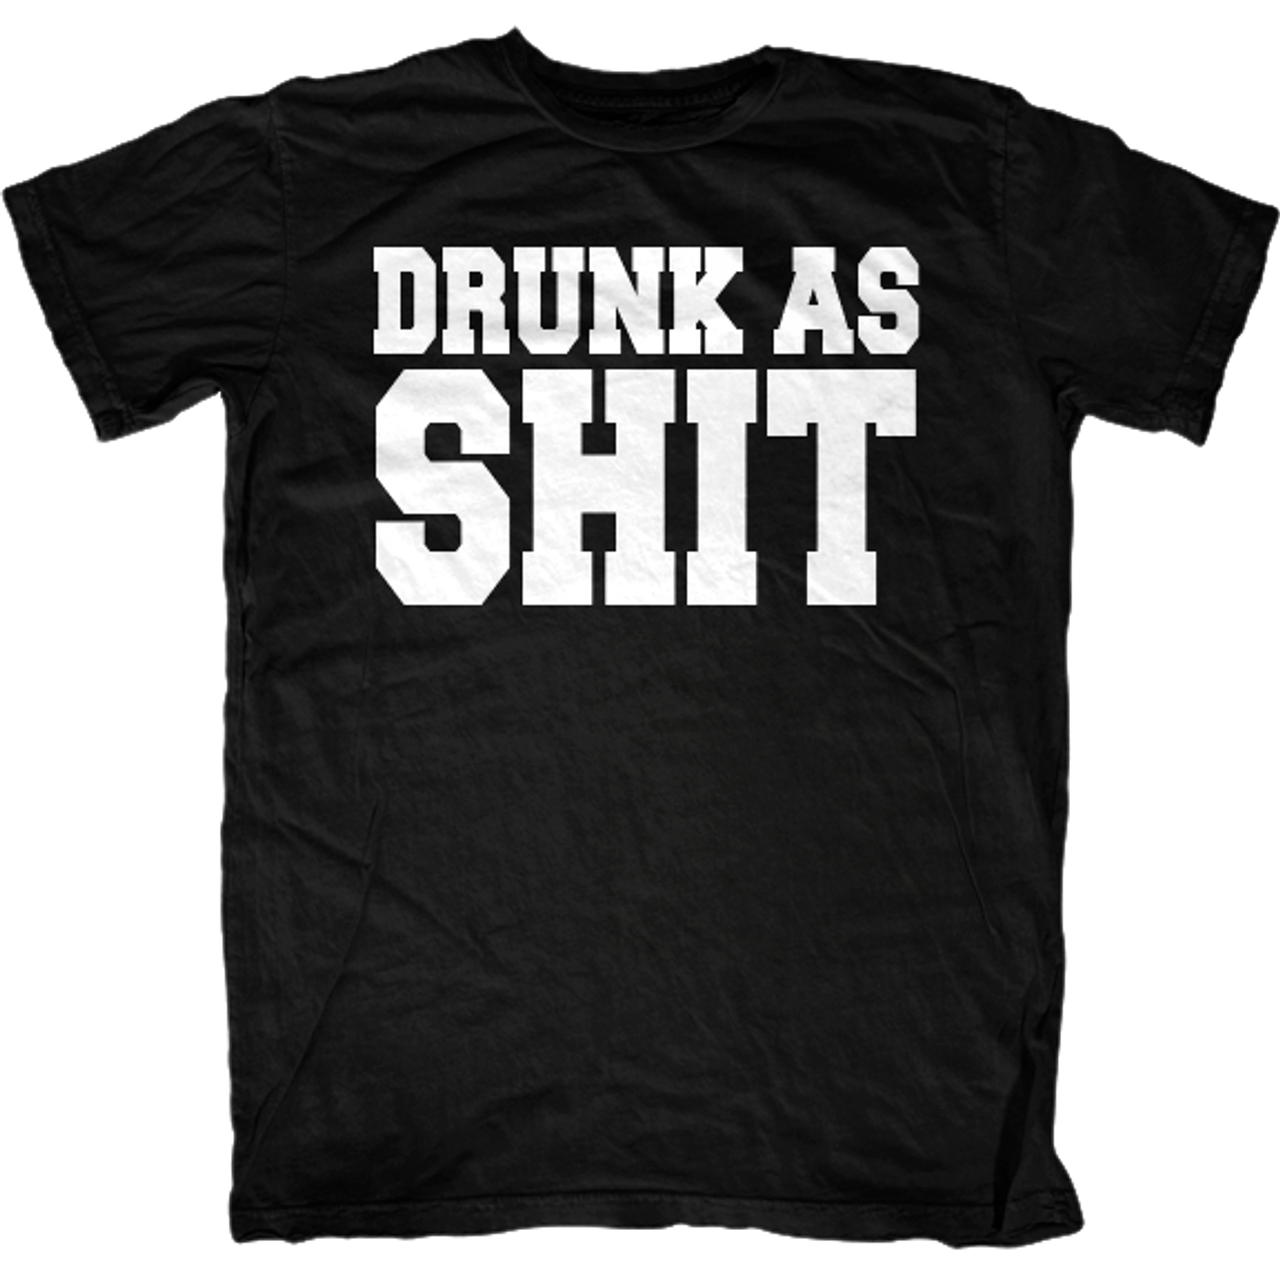 Drunk as Shit T-Shirt - First Amendment Tees Co. Inc.